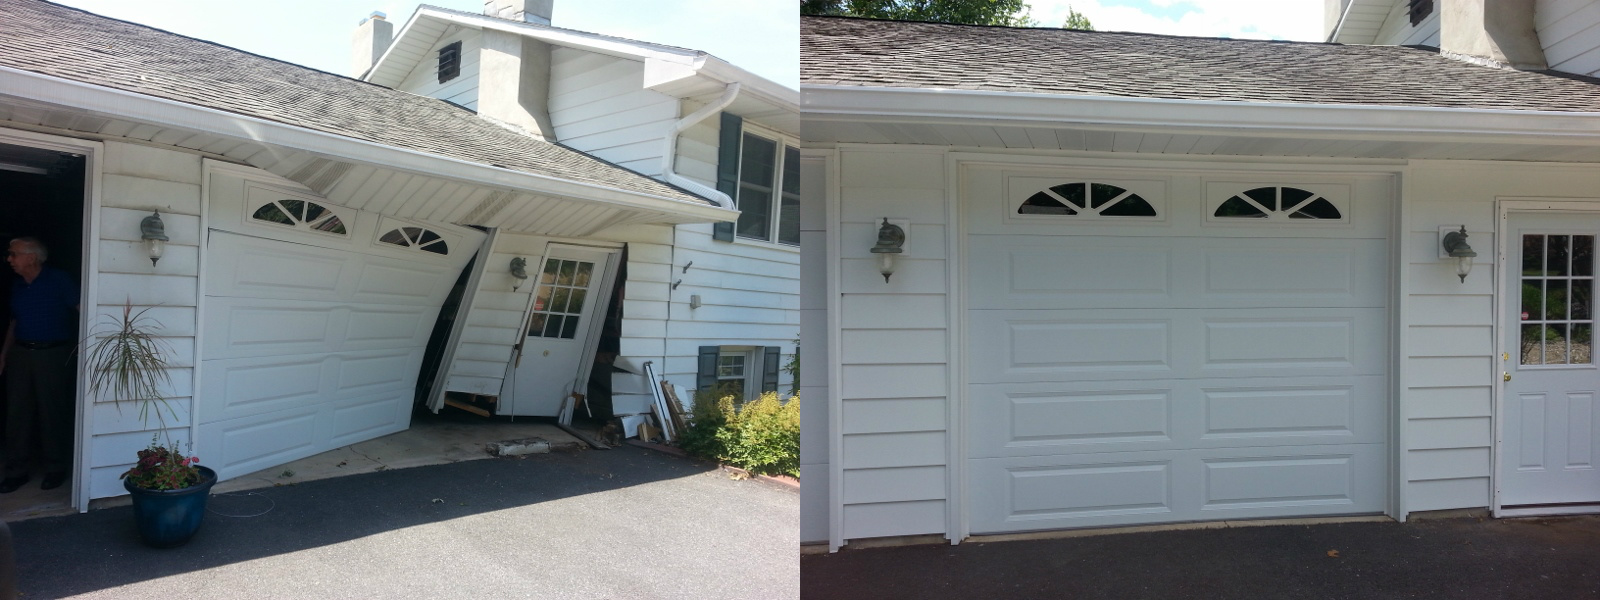 garage door crash before and after